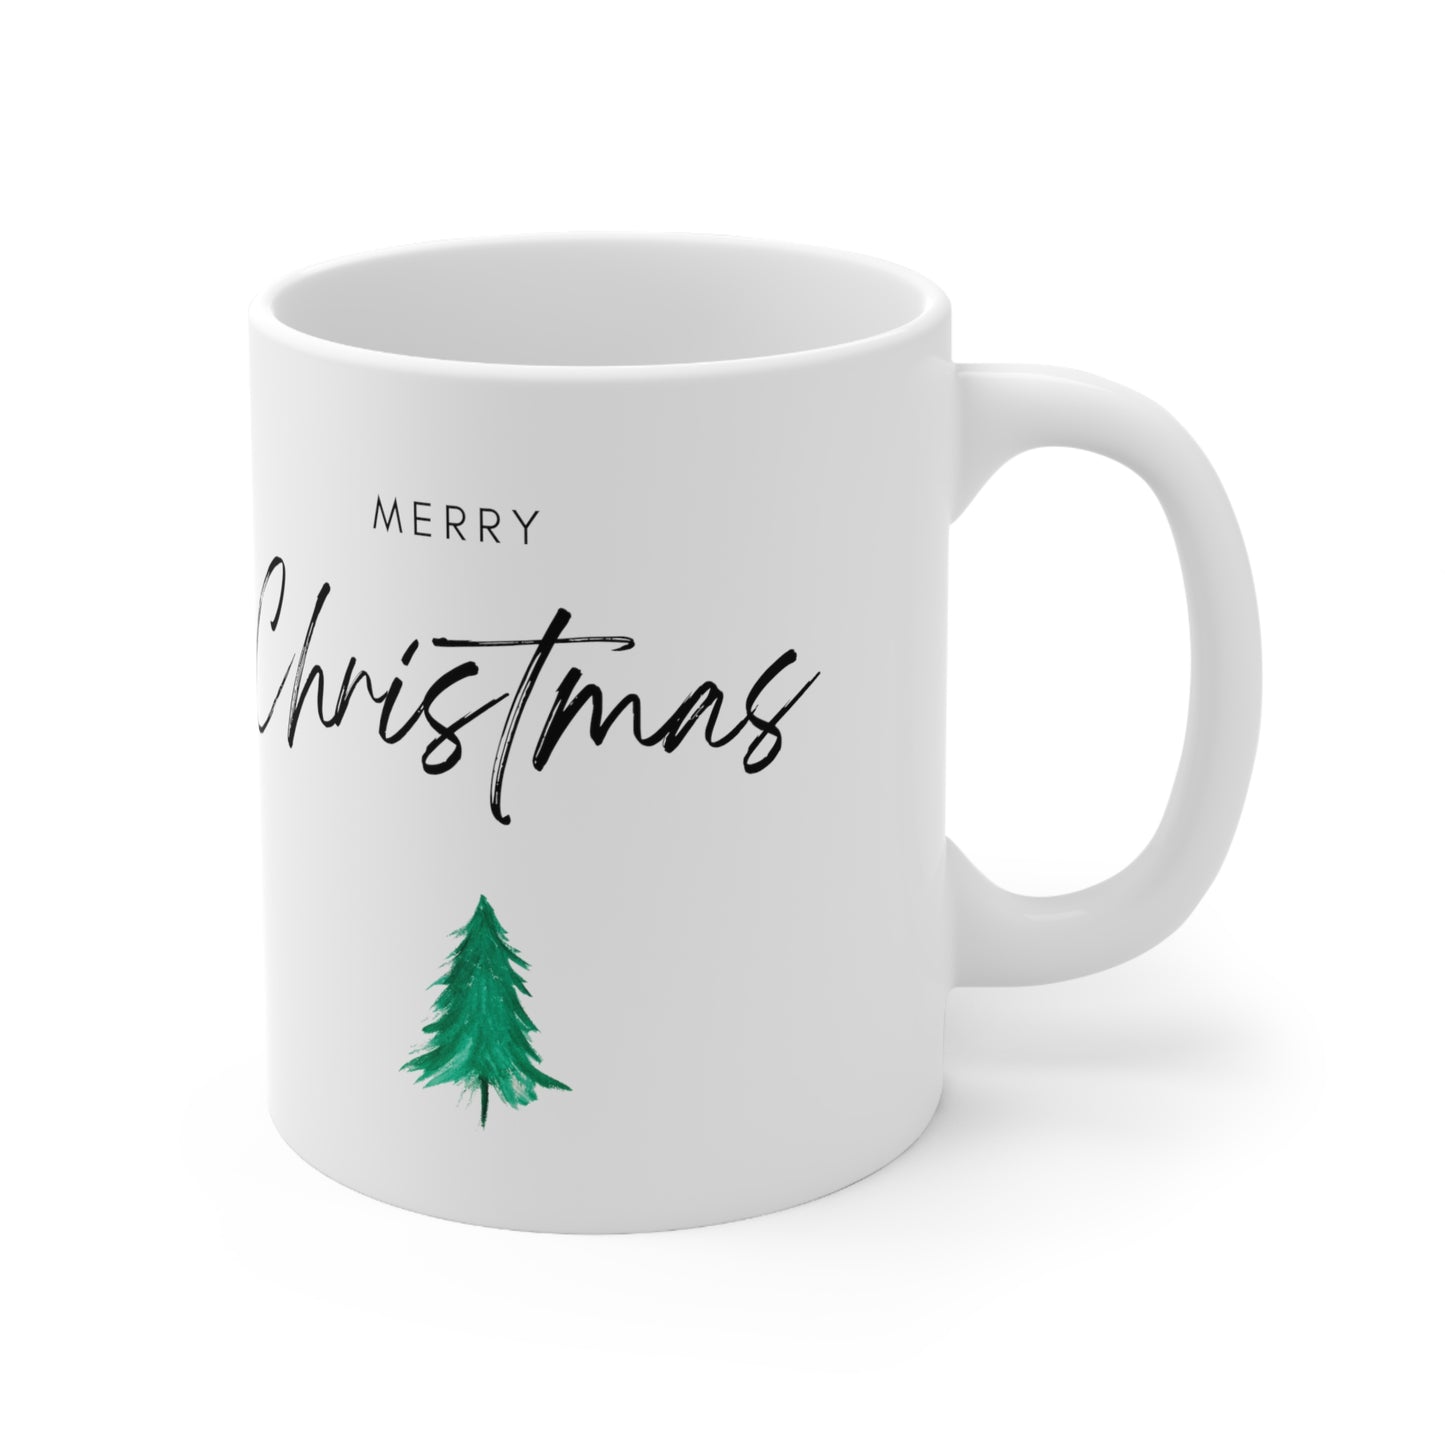 Merry Christmas with Tree Printed Ceramic Mug, 11oz